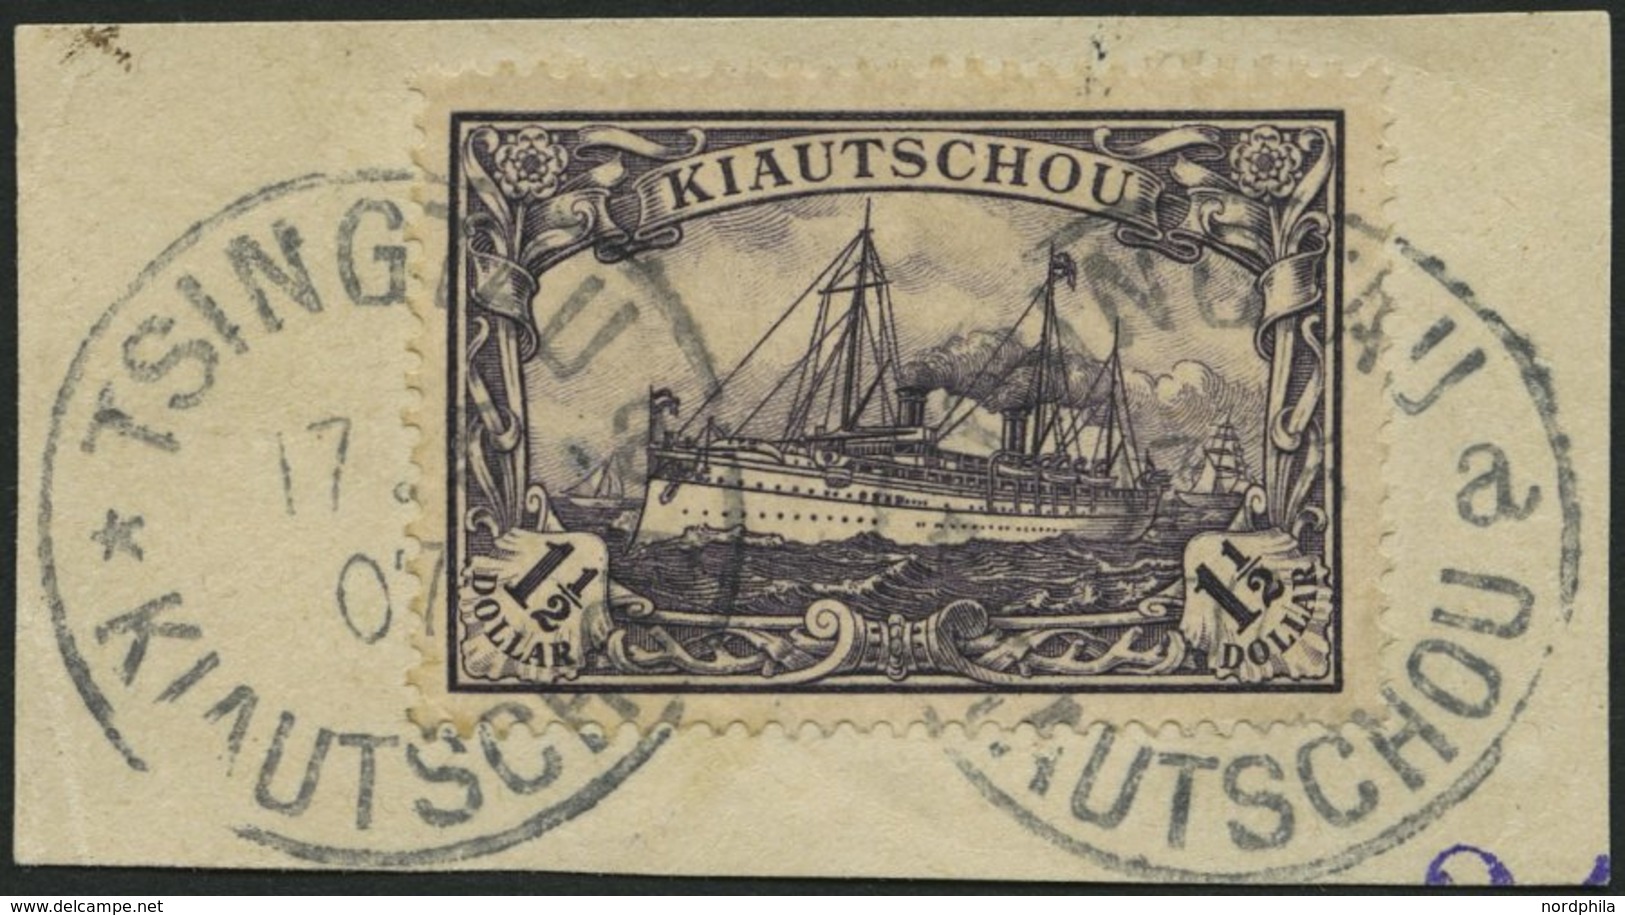 KIAUTSCHOU 36IAa BrfStk, 1905, 11/2 $ Schwarzviolett, Mit Wz., Friedensdruck, Kleiner Zahnfehler Sonst Prachtbriefstück, - Kiautschou